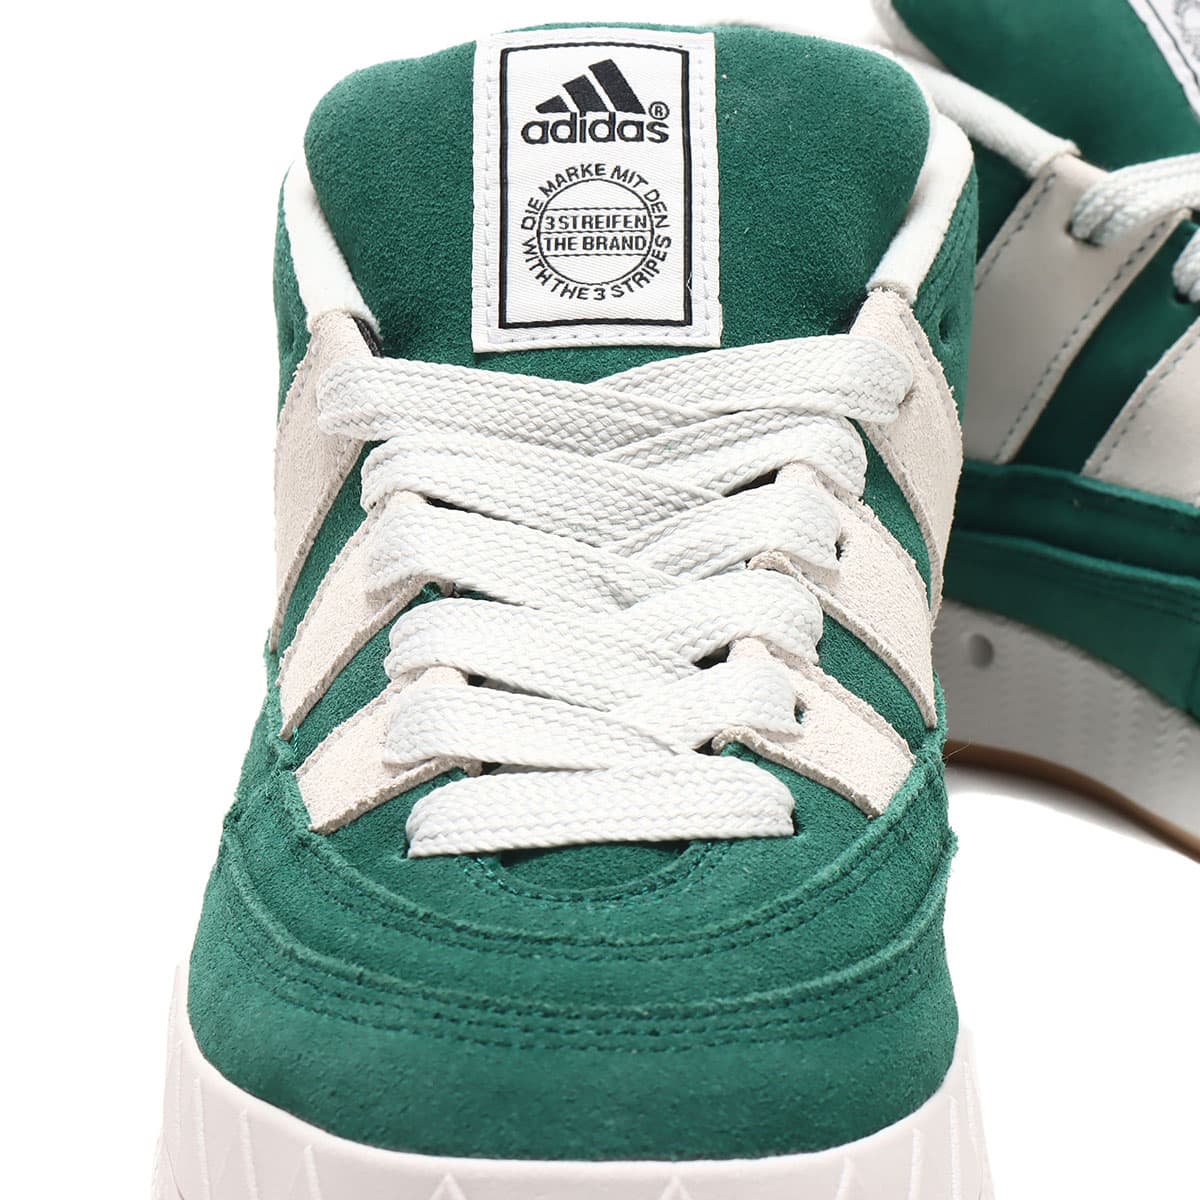 adidas Originals Adimatic "Green" 23.5cm